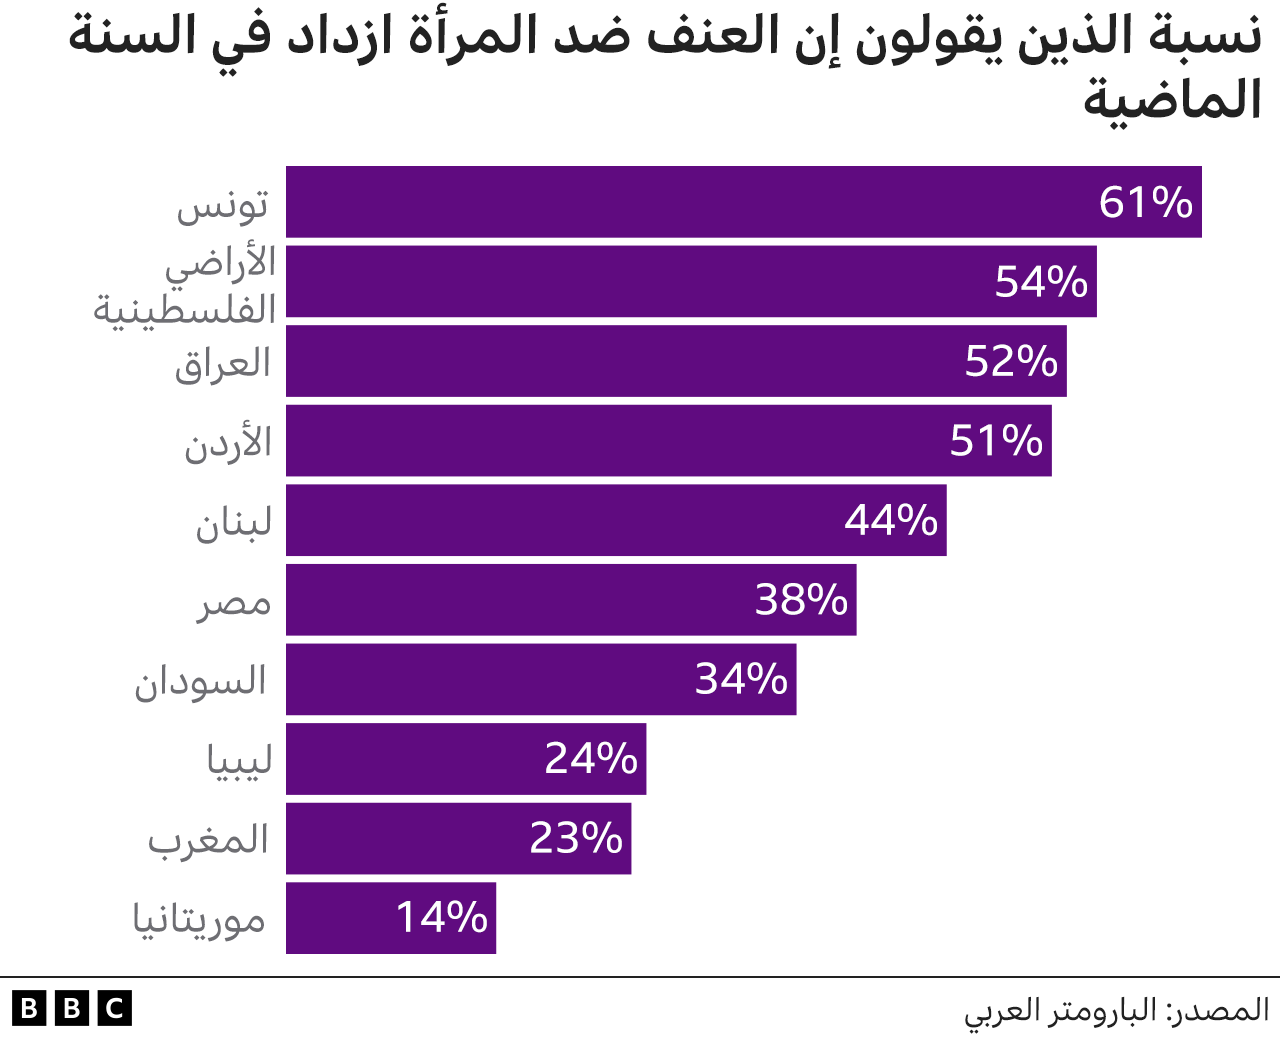 رسم بياني يوضح نسبة الأشخاص الذين يعتقدون أن العنف ضد النساء ازداد خلال العام الماضي